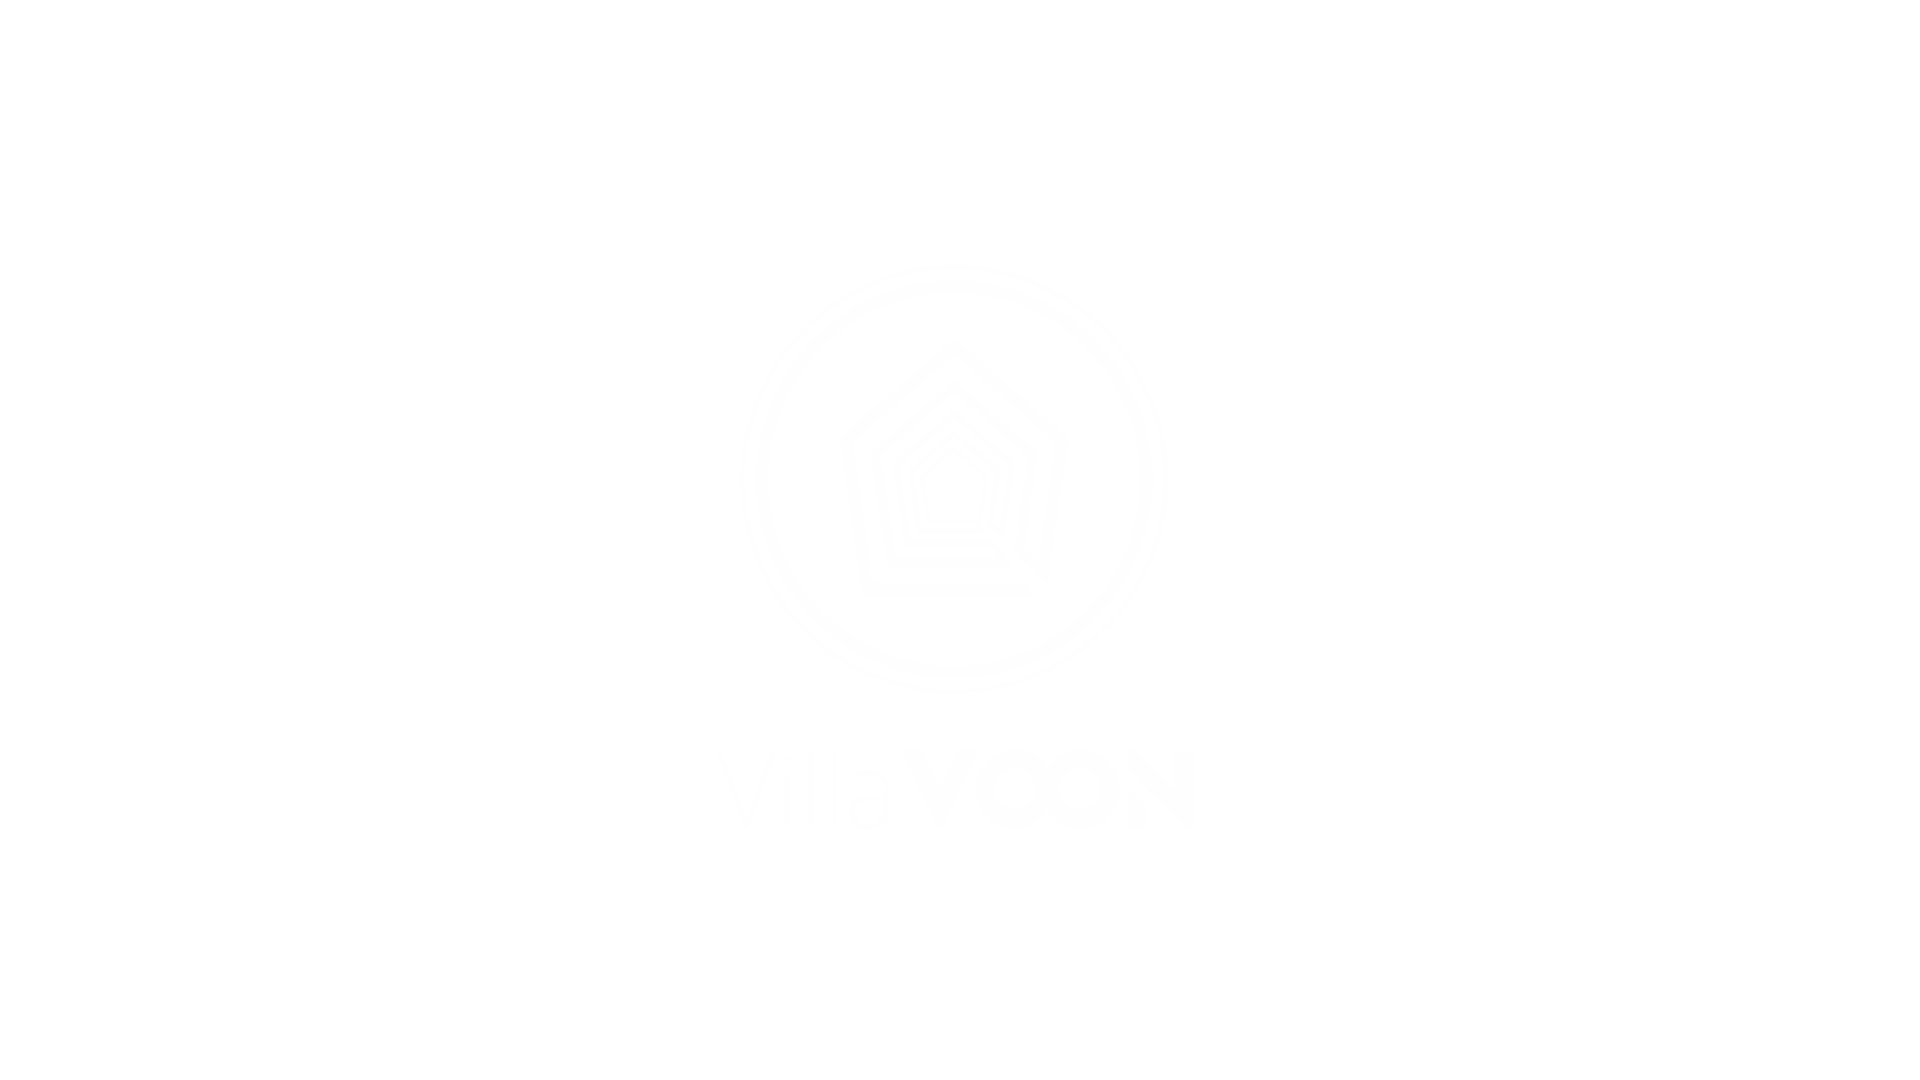 villavoon-1920-×-1080-px